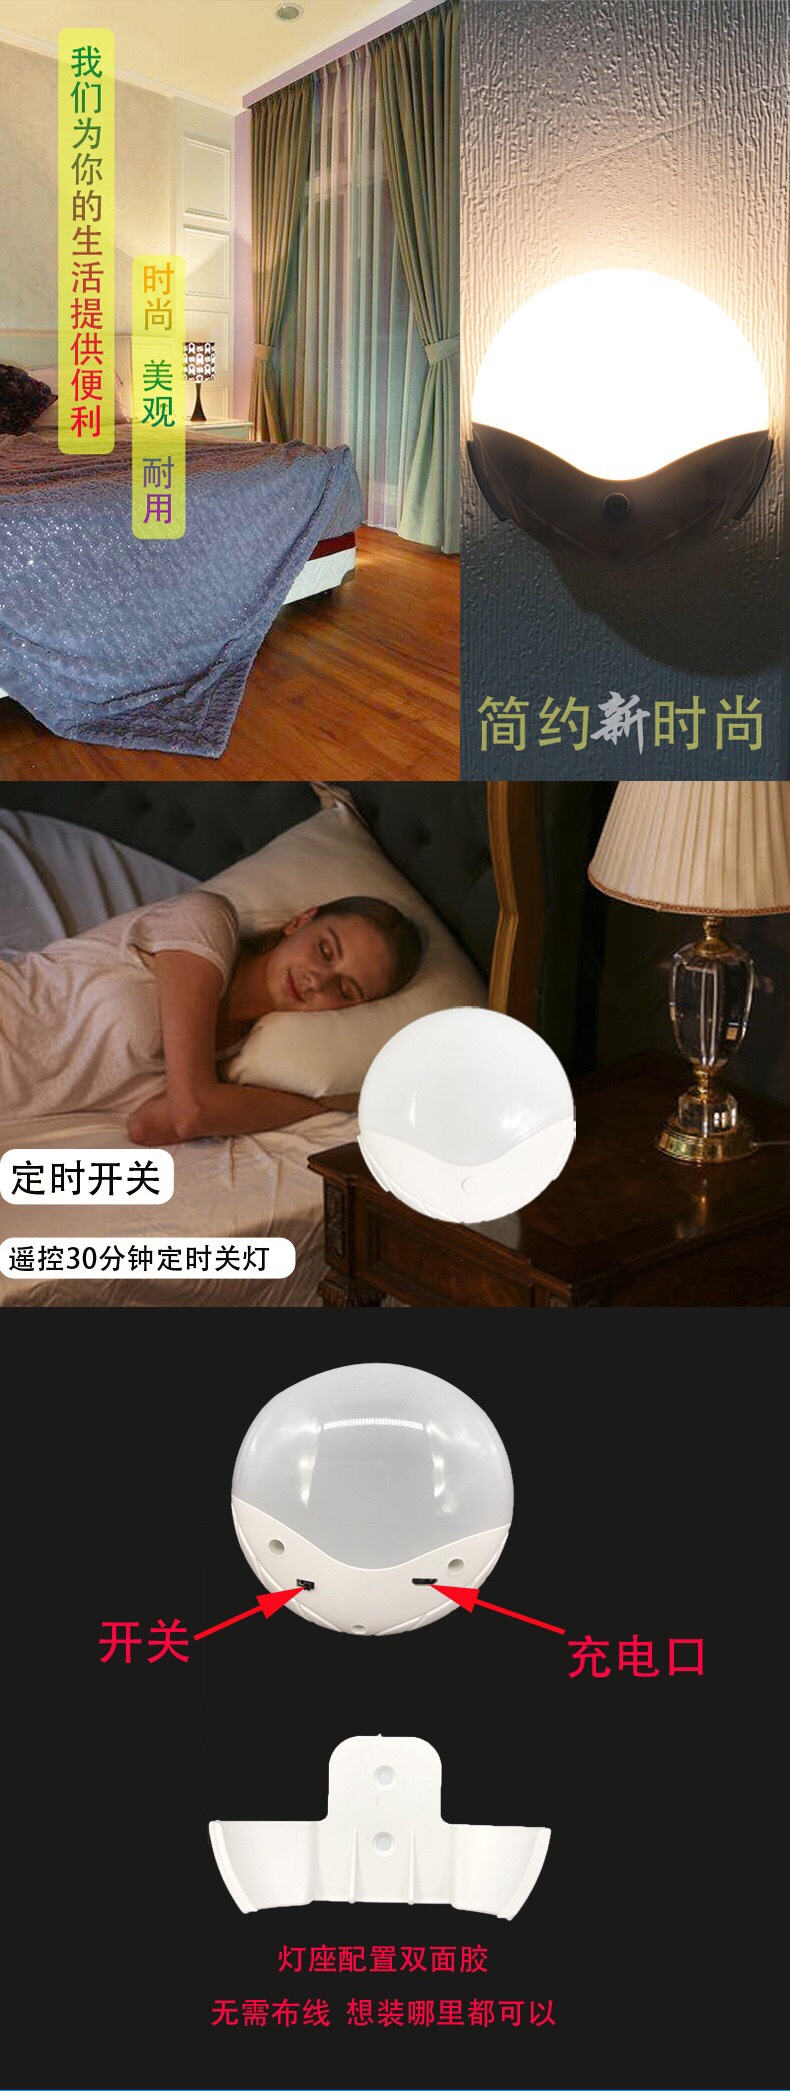 新款小夜灯无线遥控可充电led灯 手办柜子酒柜射灯卧室床头创意详情图8